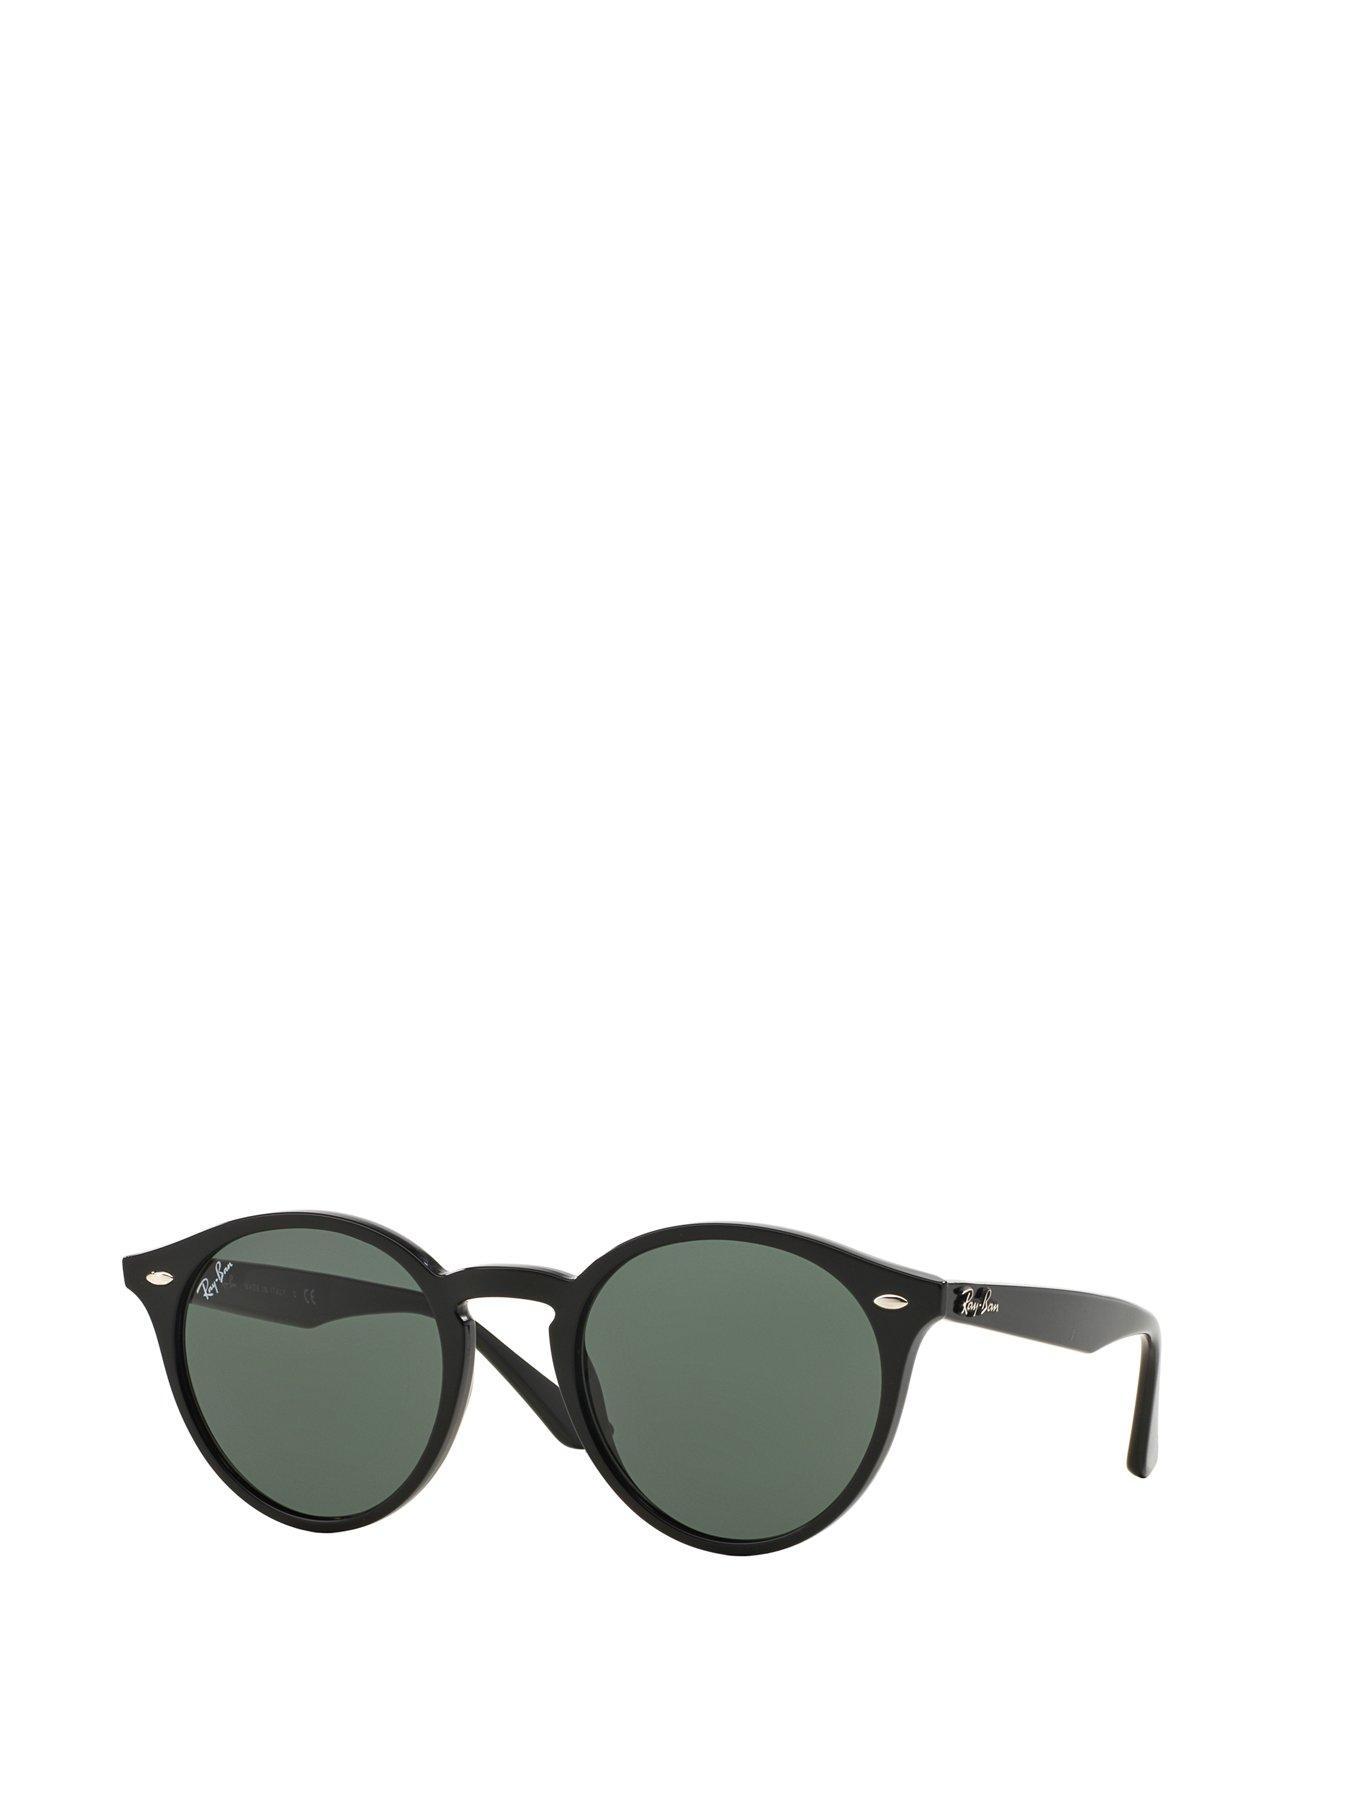 Ray-Ban Round Sunglasses 